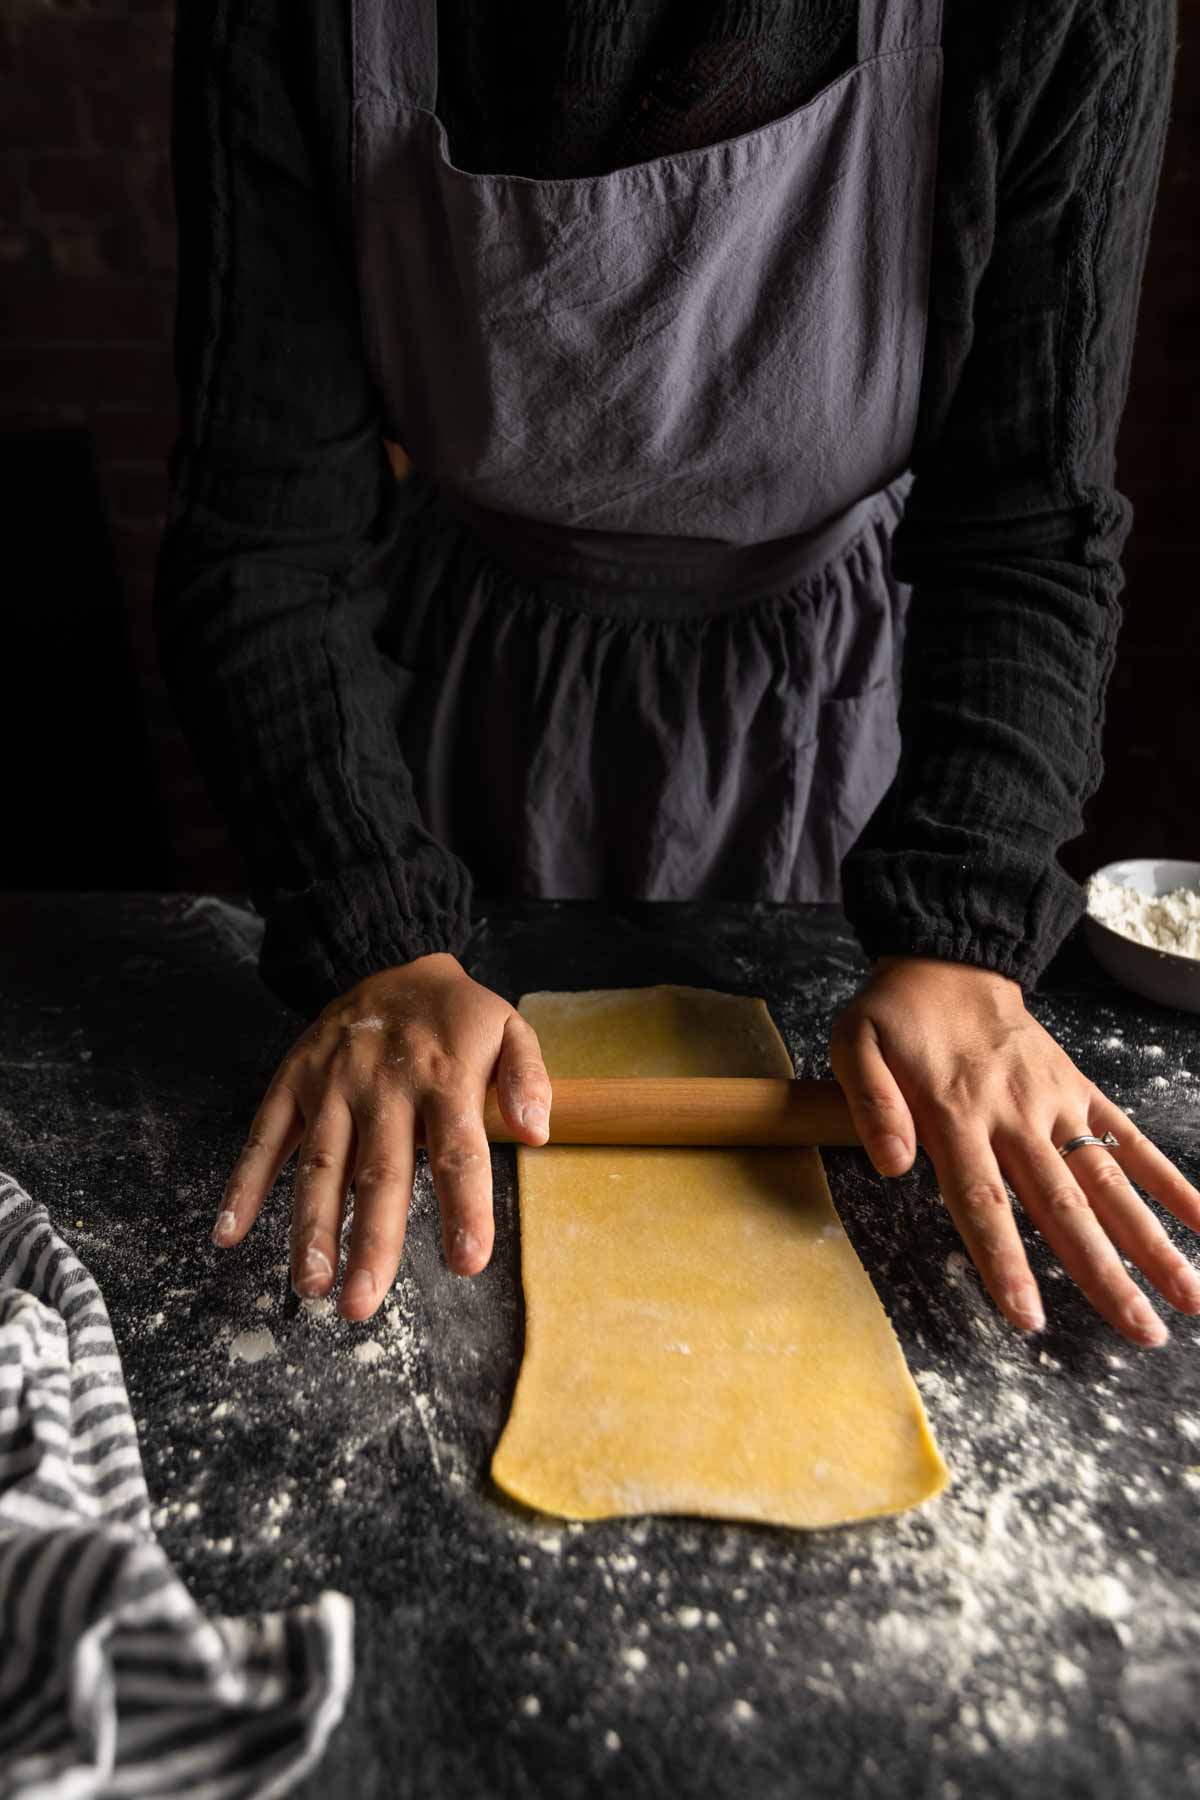 a woman rolling a long thin sheet of semolina pasta dough to make fettuccine